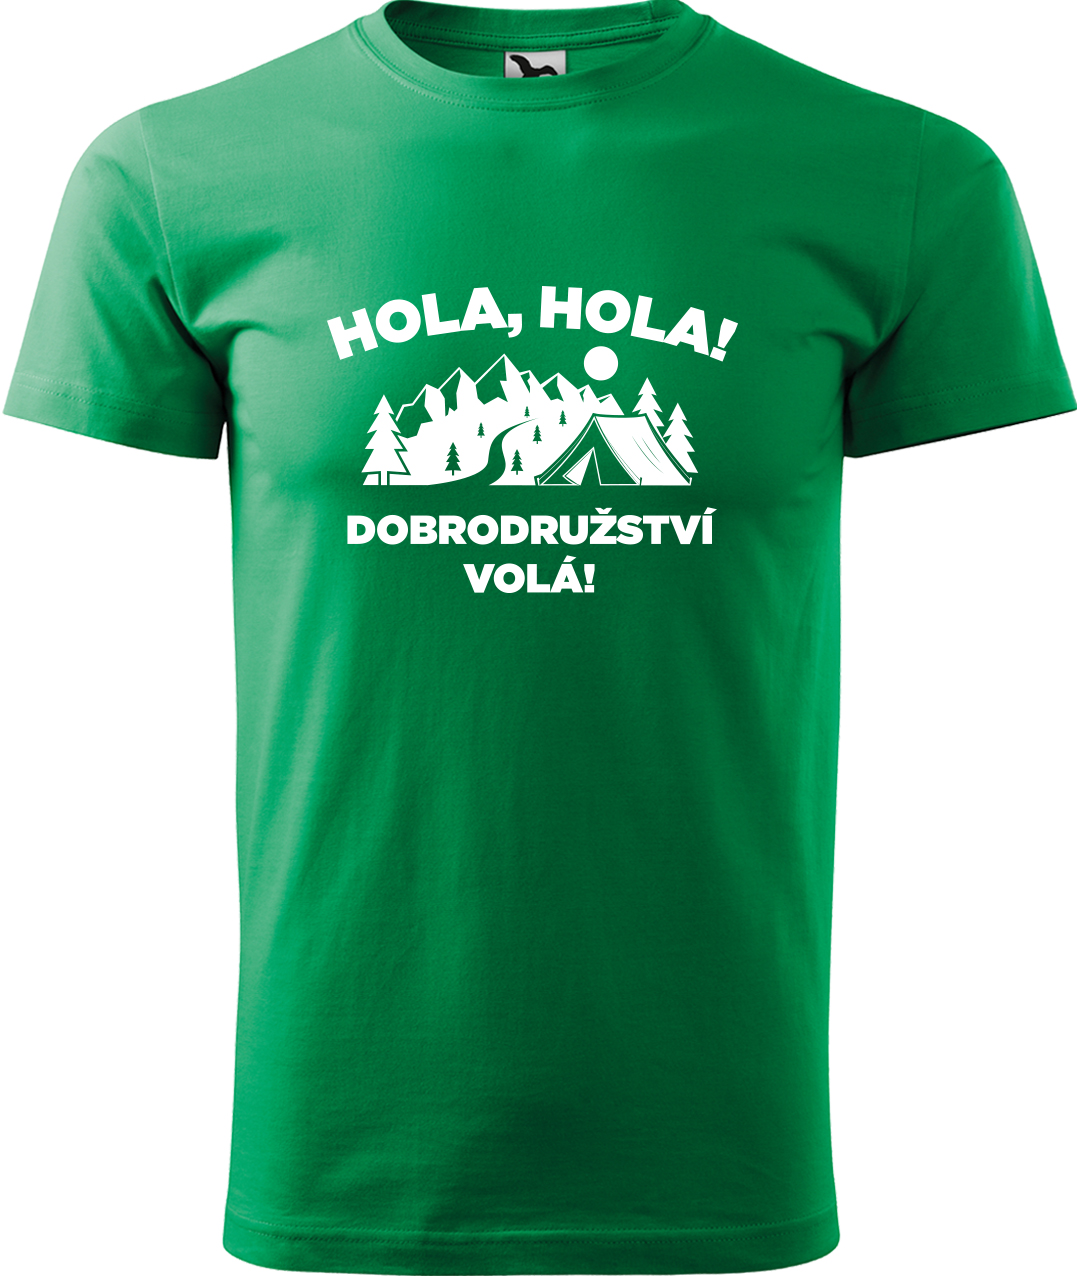 Pánské cestovatelské tričko - Hola hola! Dobrodružství volá! Velikost: L, Barva: Středně zelená (16), Střih: pánský